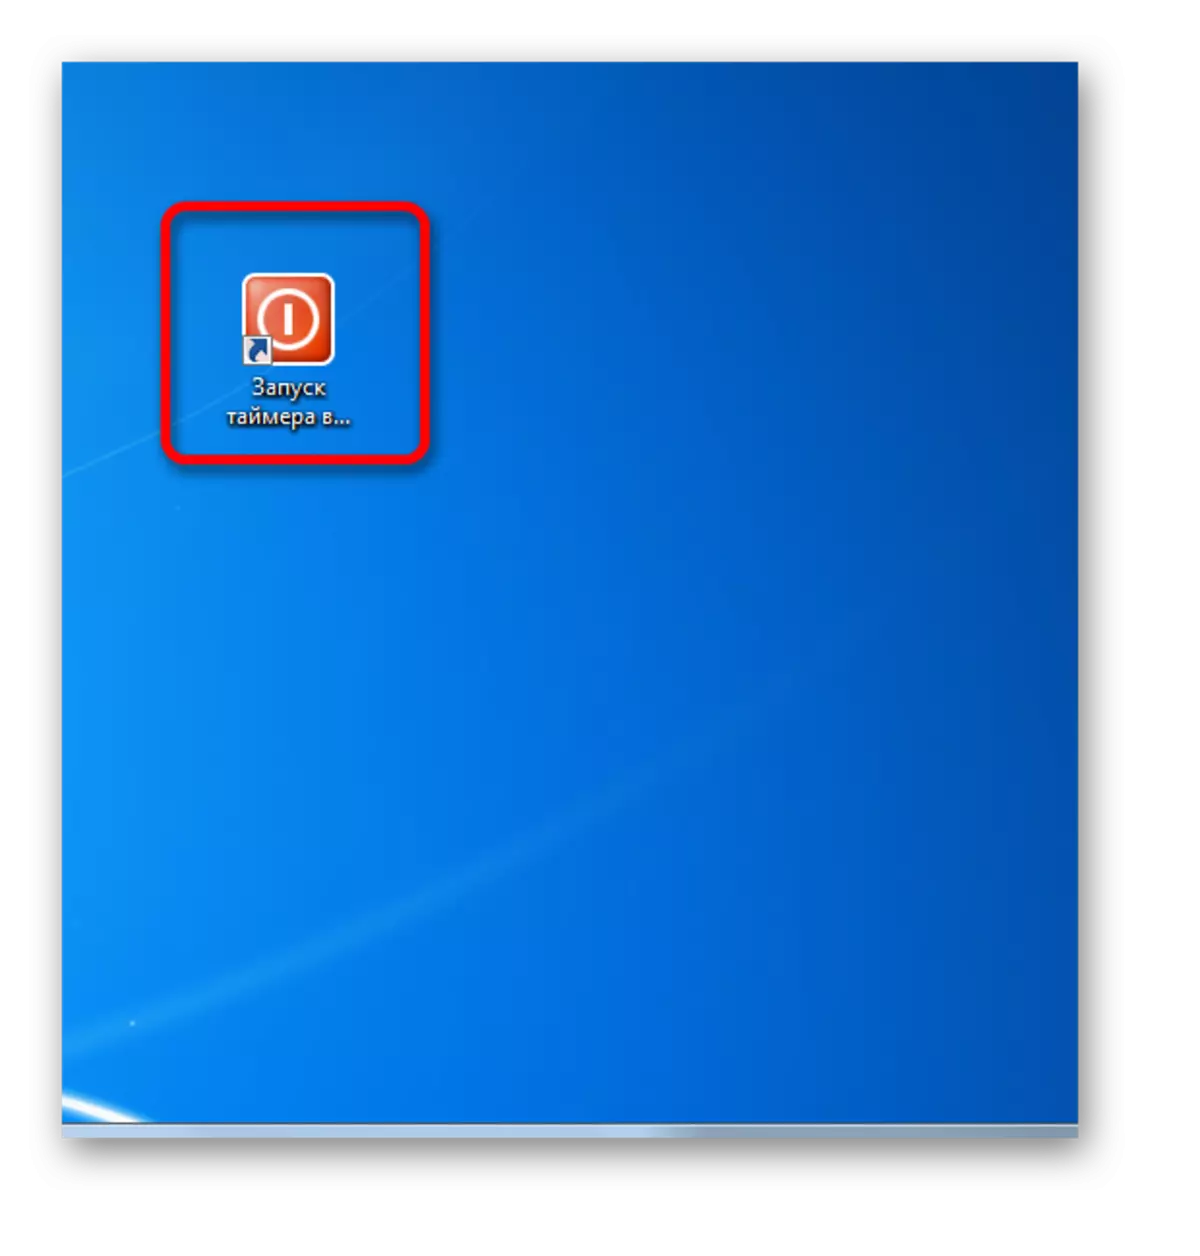 Mae'r eicon label yn newid Windows 7